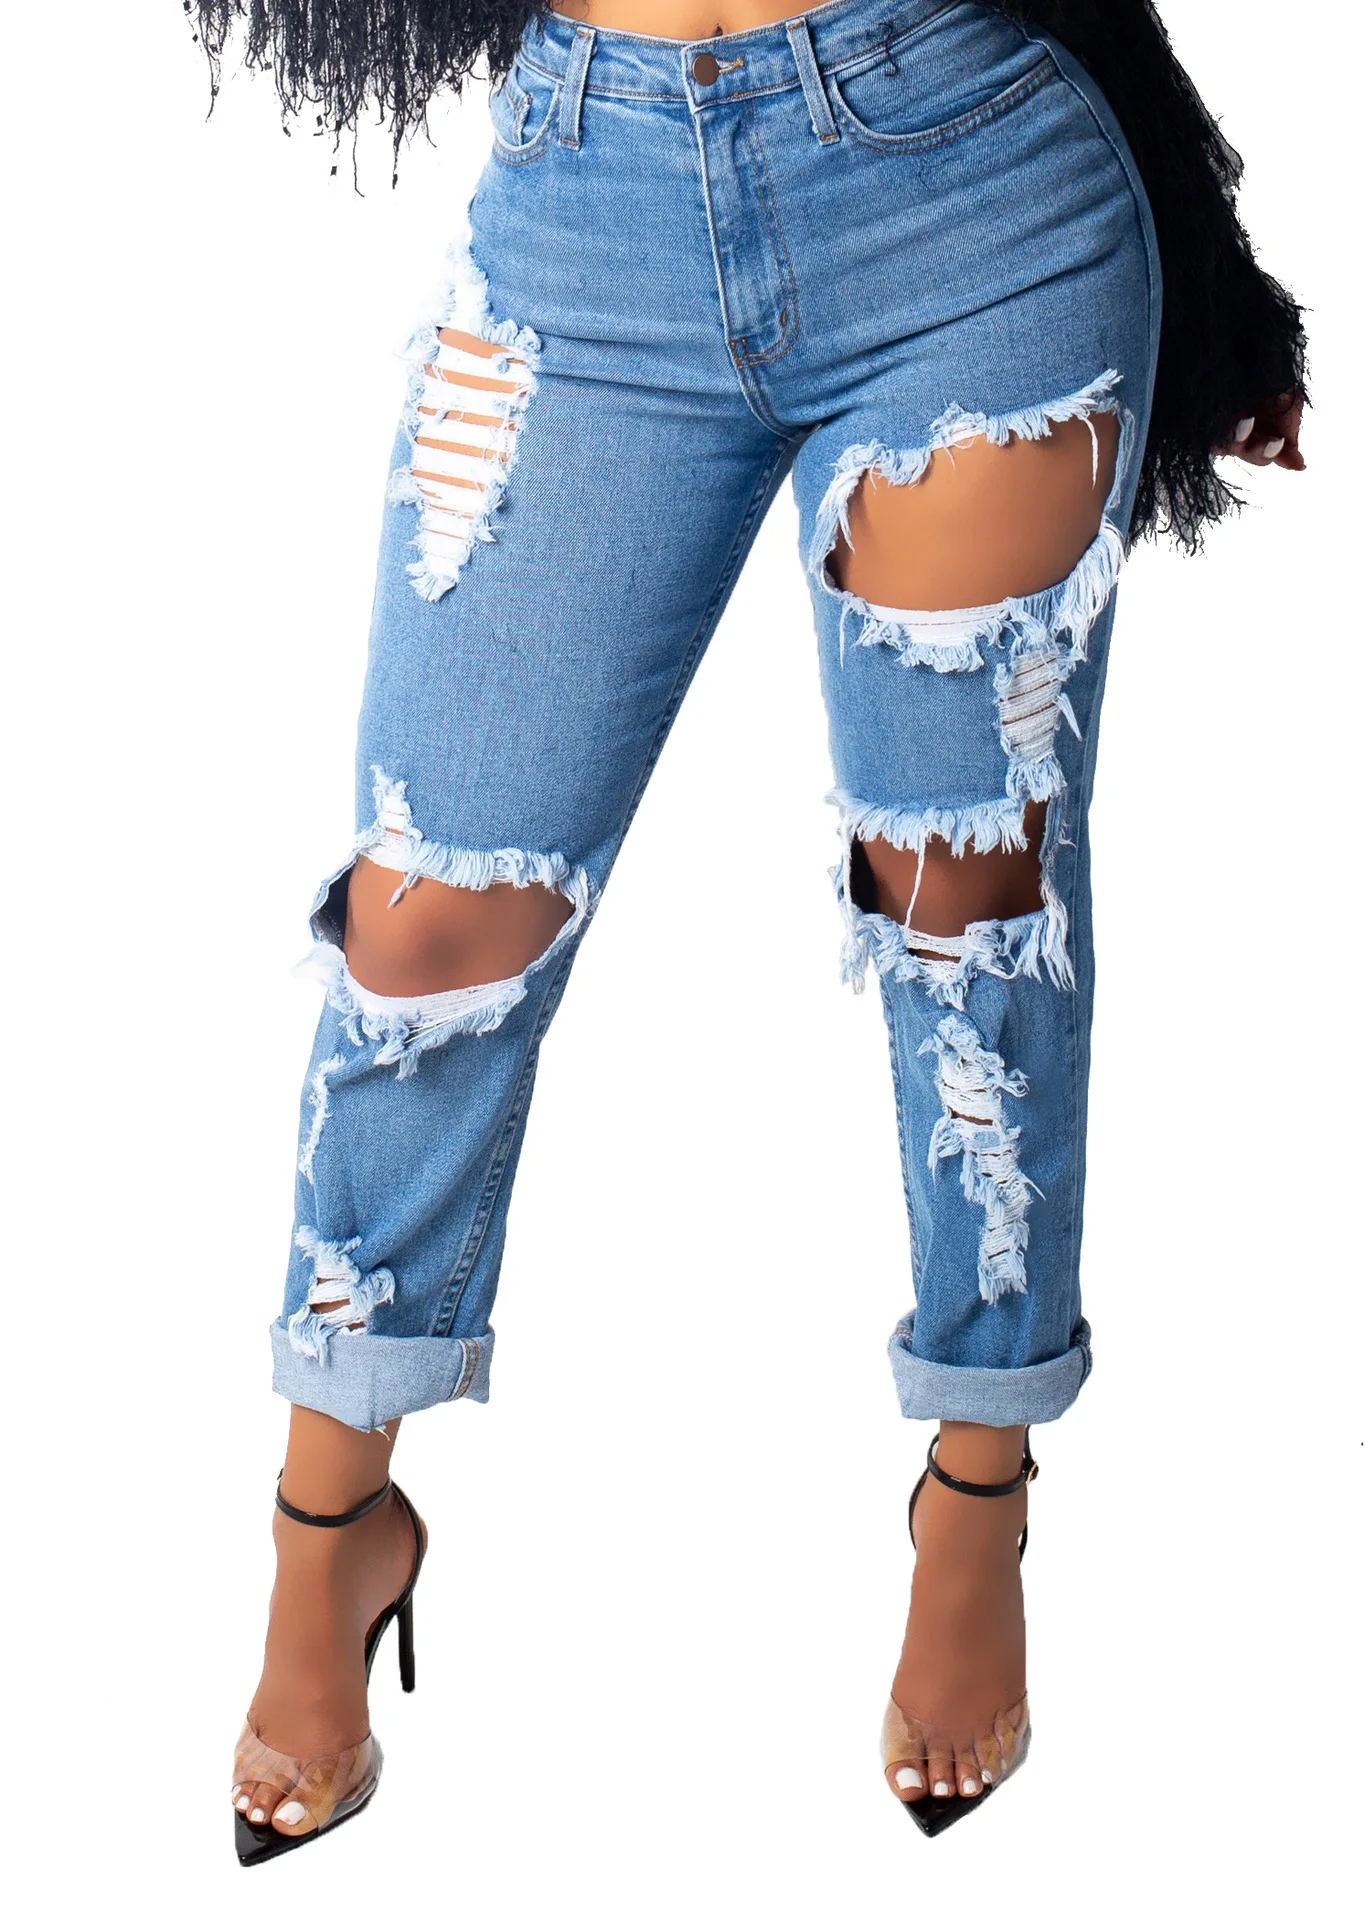 QMGOOD, рваные обтягивающие джинсы, женские, сексуальные, модные, с большими дырками, стрейчевые, женские джинсы, узкие брюки, синие, джинсовые брюки размера плюс, джинсы для мам